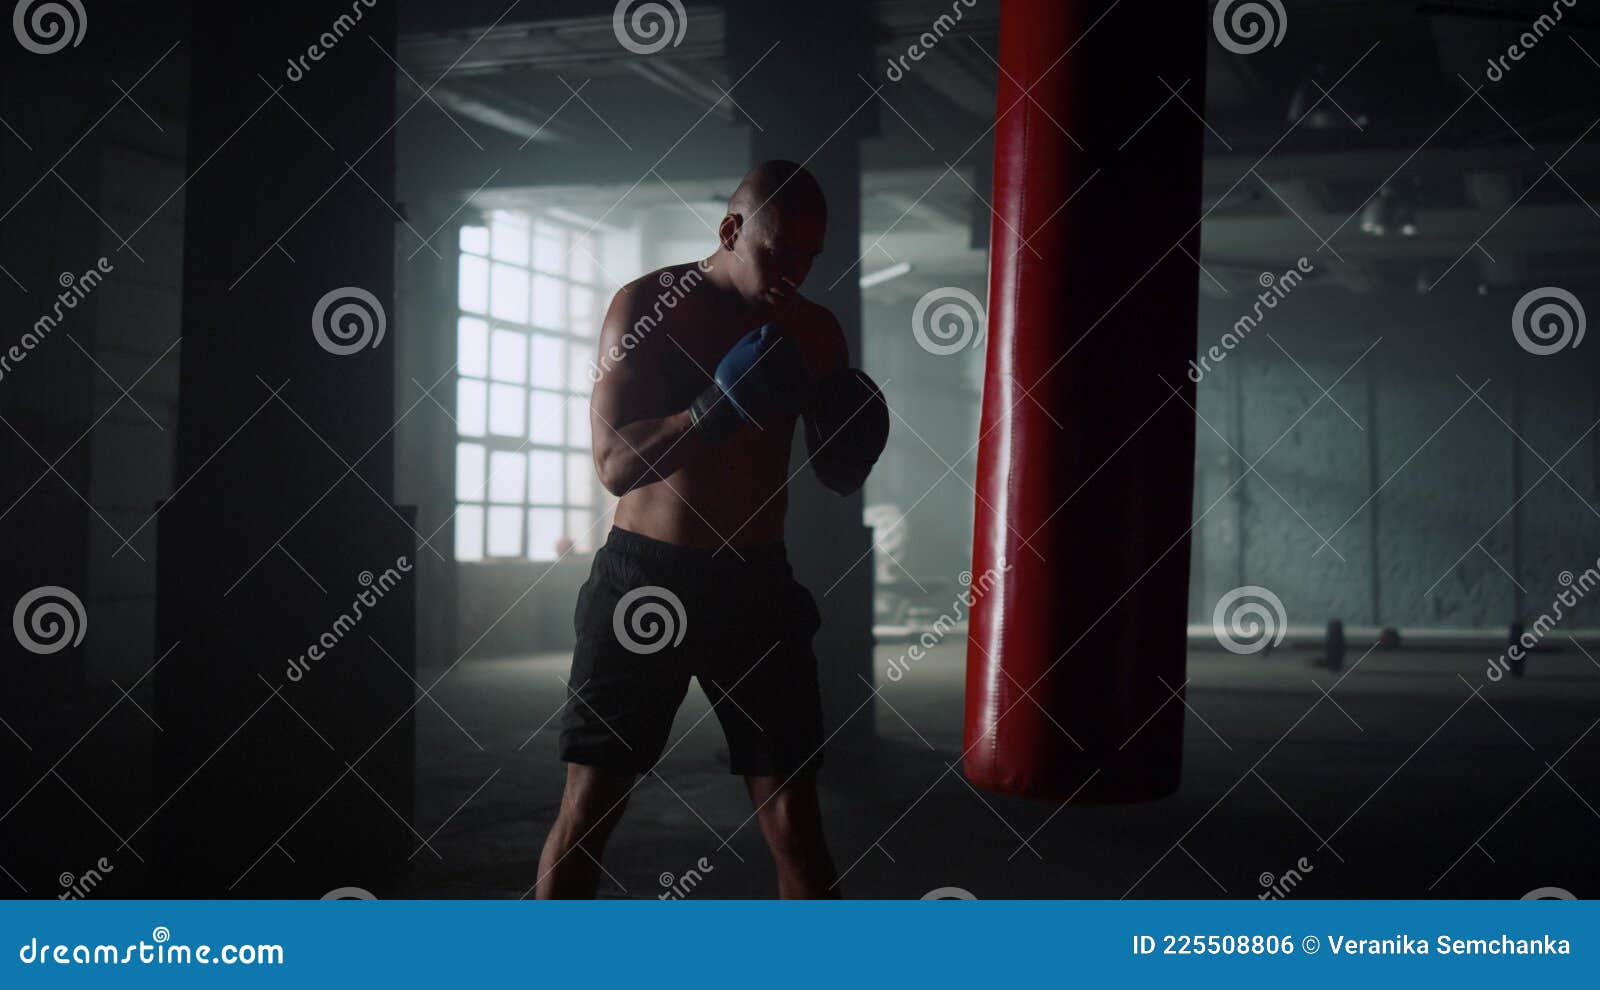 Boxeur Pratique Des Coups De Pied Sur Punching Bag Dans La Salle De Gym. Sac  De Sport Boxeur De Type Dans Gants Photo stock - Image du type, beau:  225508806